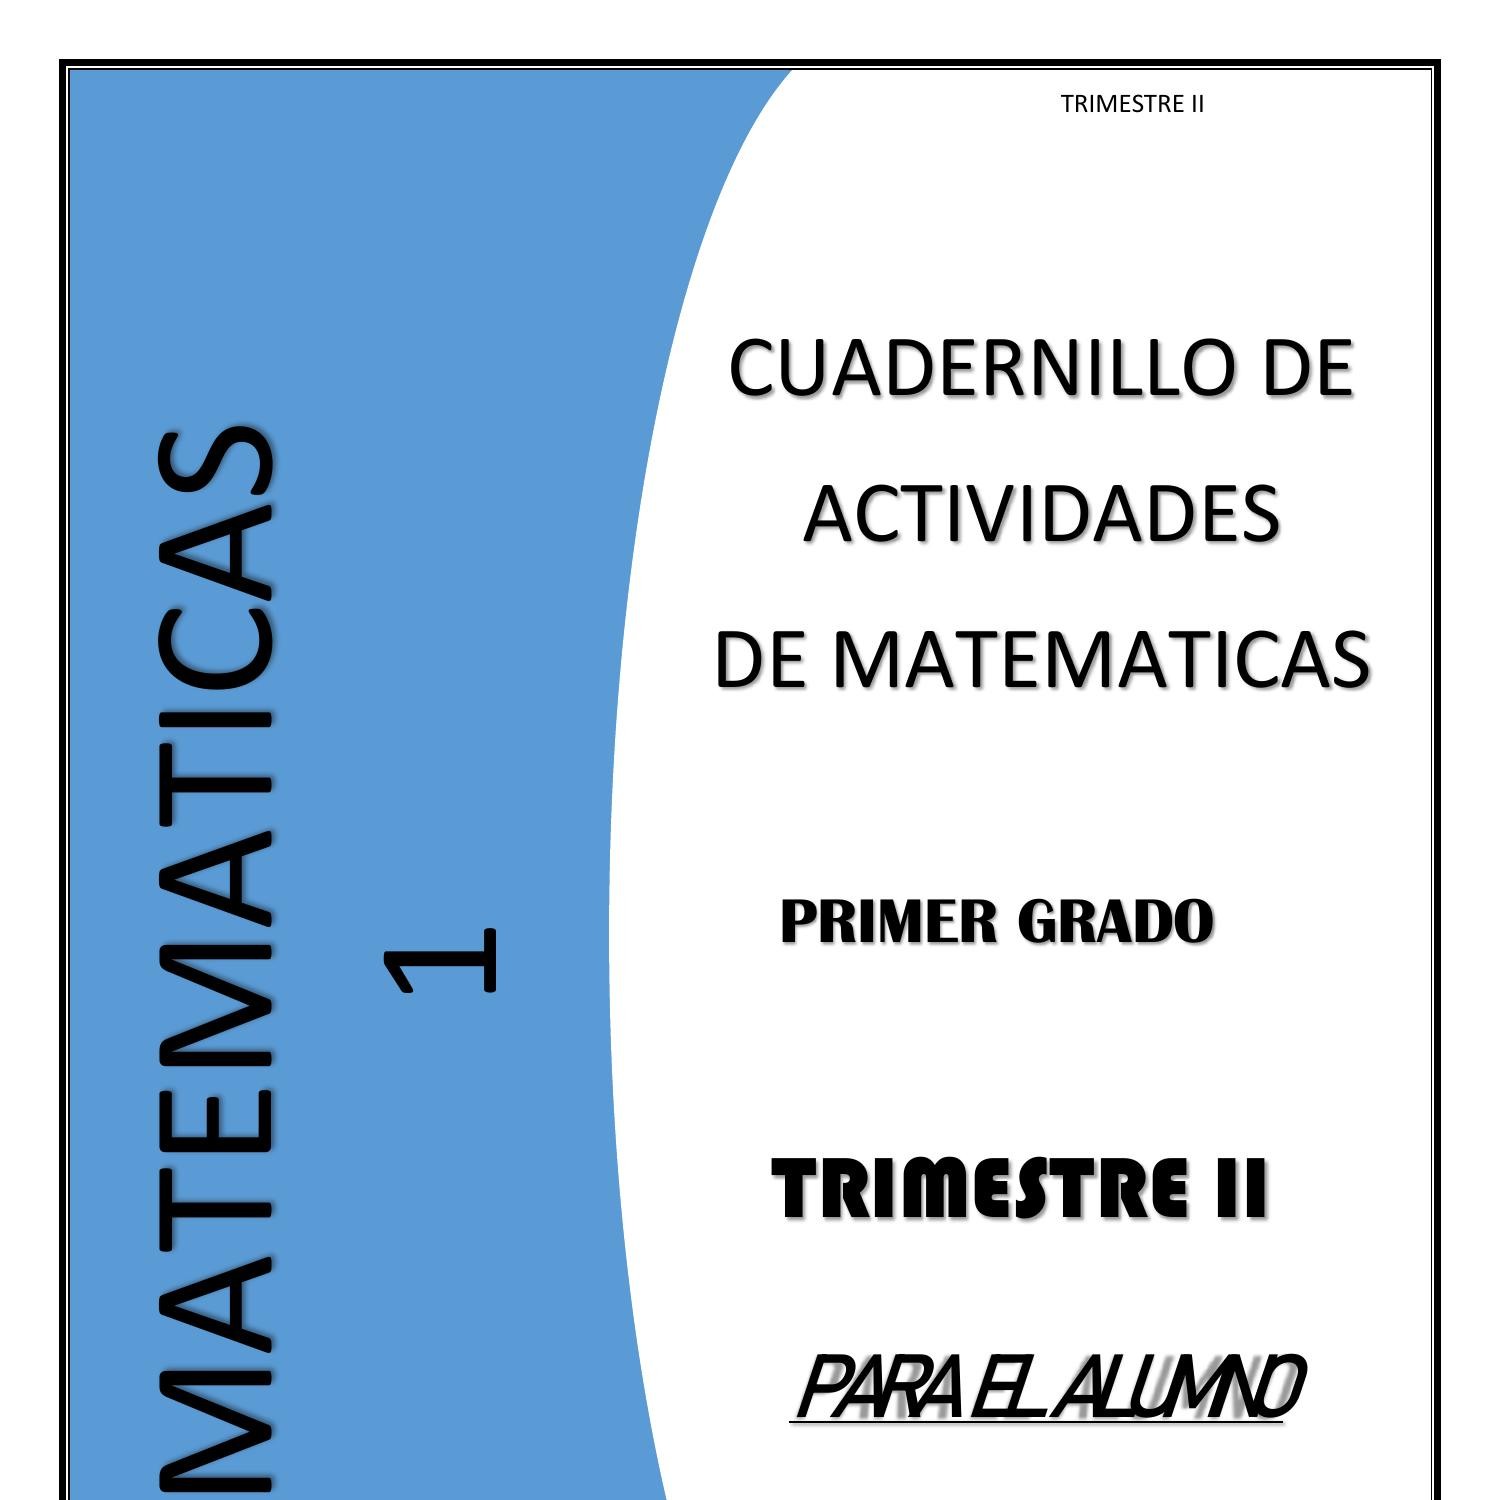 Disminución silbar seré fuerte Cuadernillo De Actividades De Matemáticas De Primero Grado De Secundaria -  Trimestre II- Alumno.pdf | DocDroid